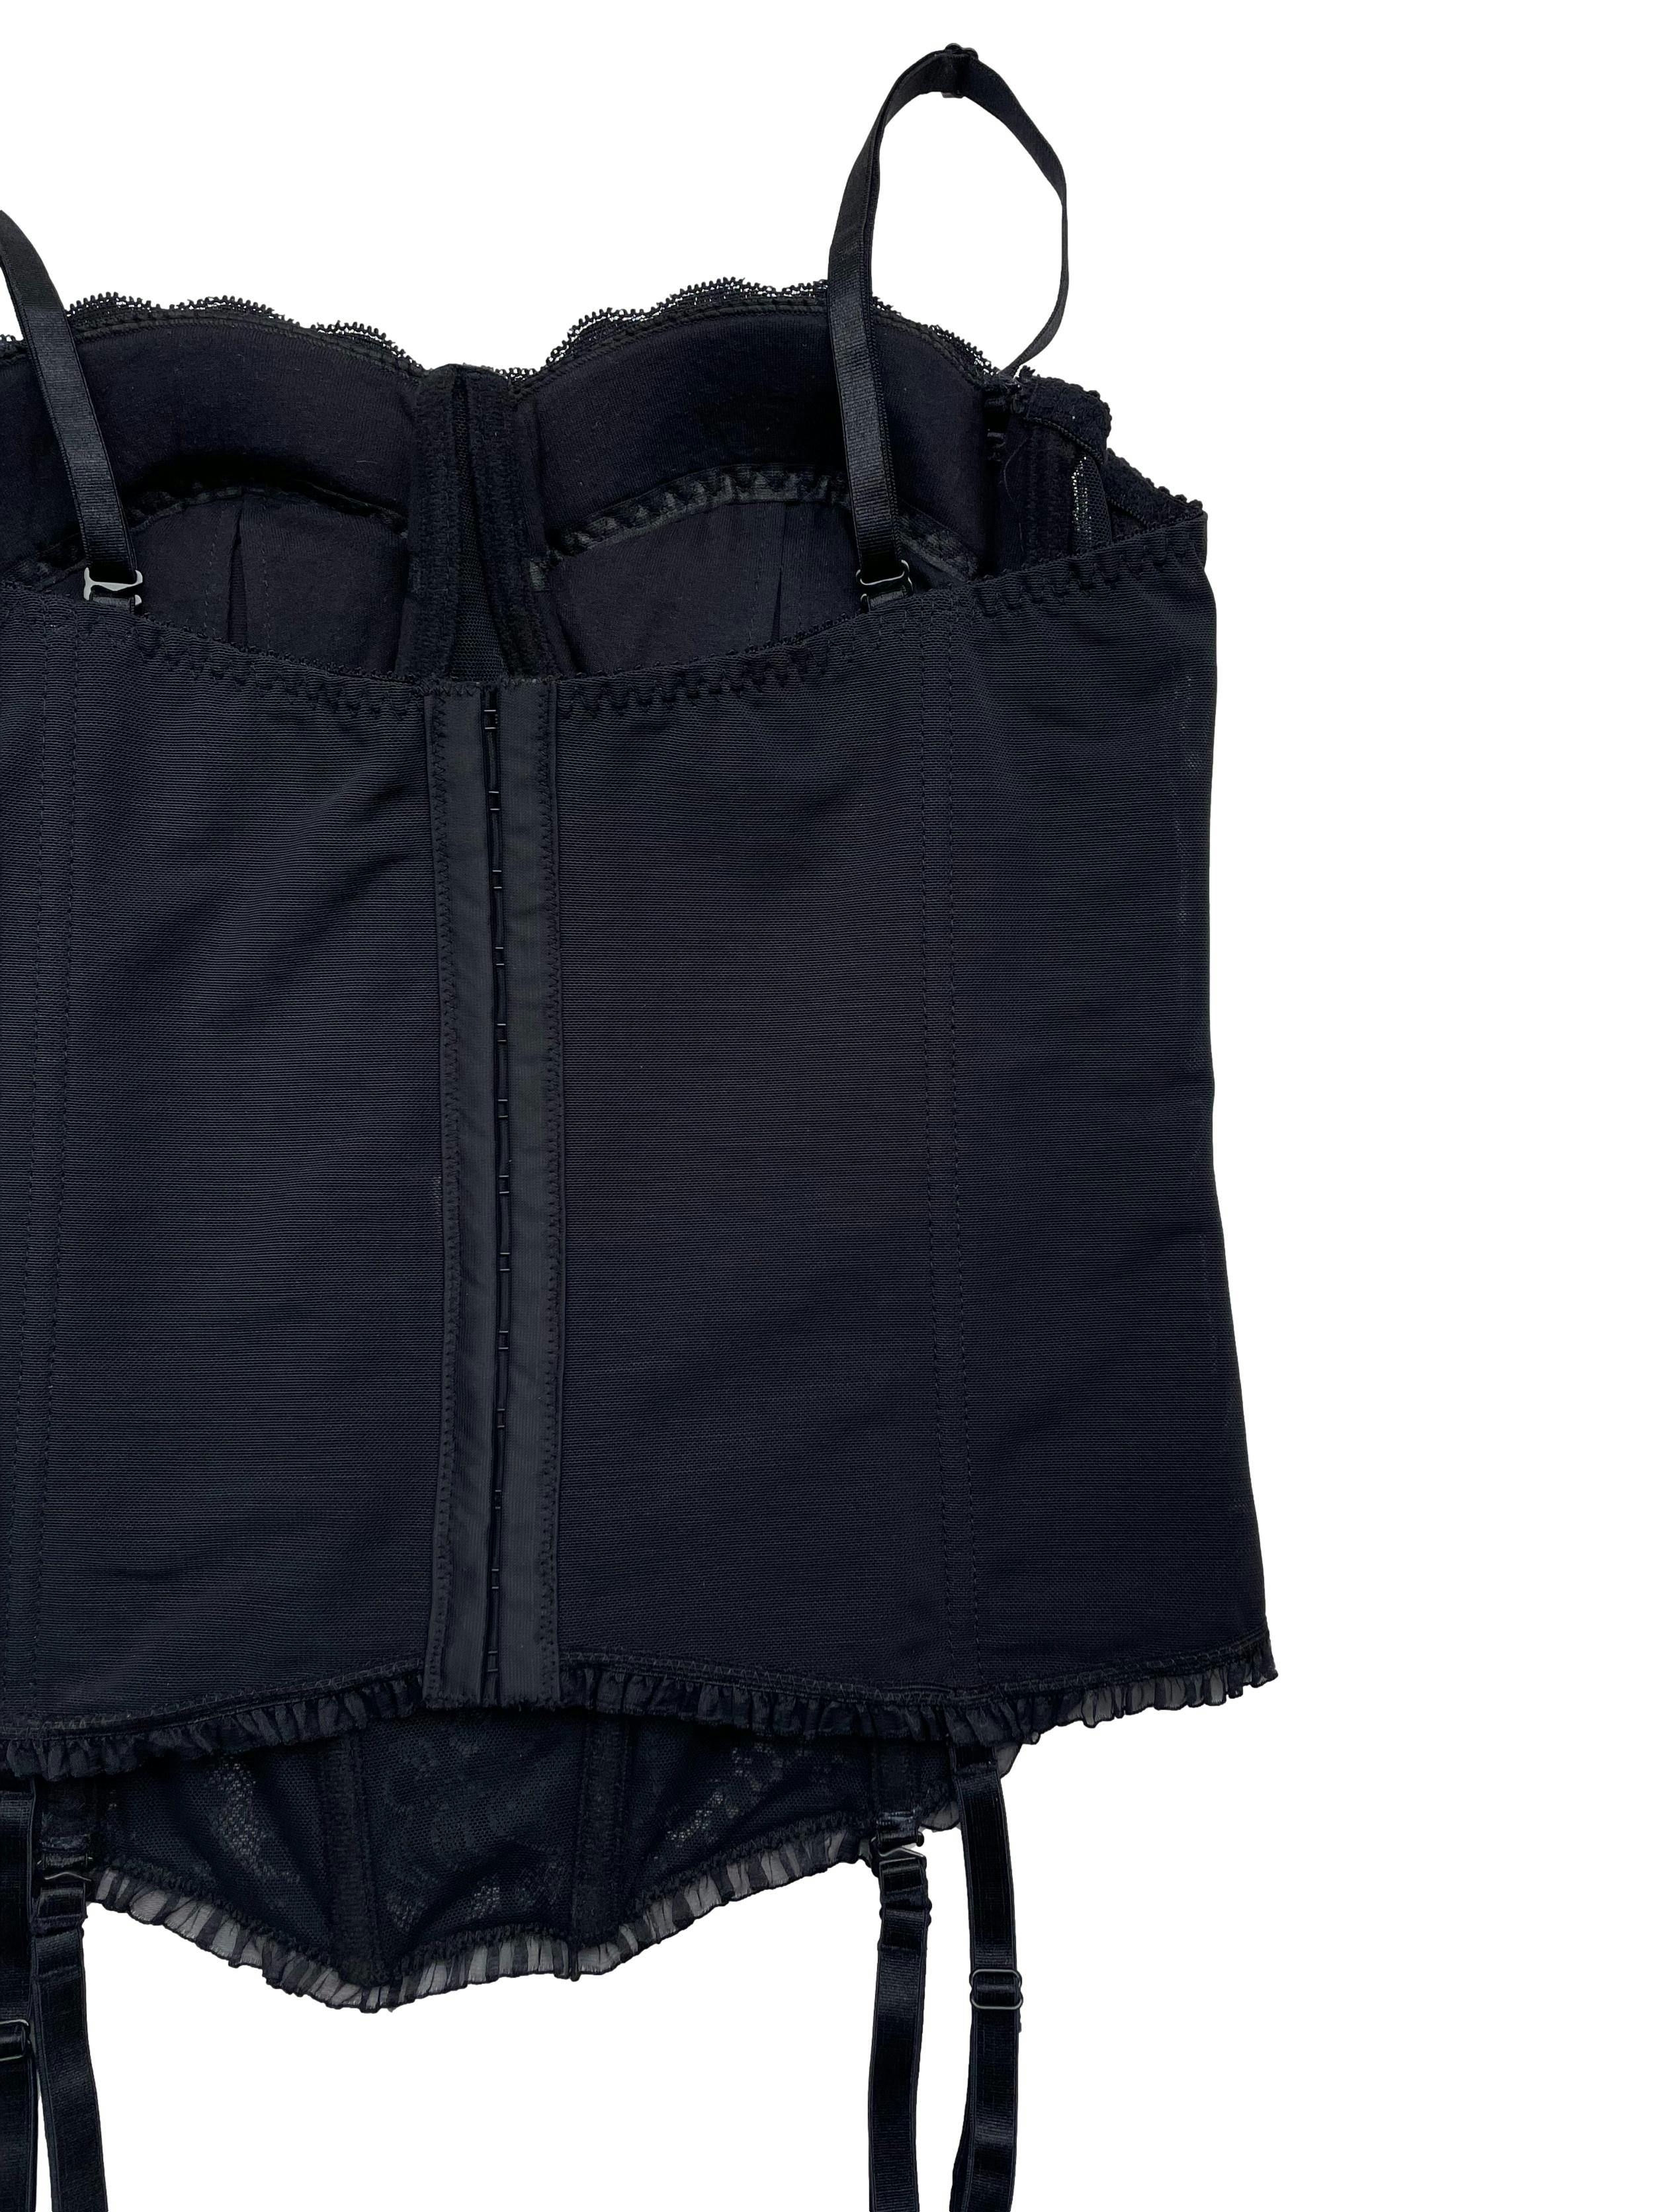 Corset Caffarena encaje negro y mesh grueso, con copas removibles, espalda regulable en dos tamaños, tiritas y jalamedias removibles.